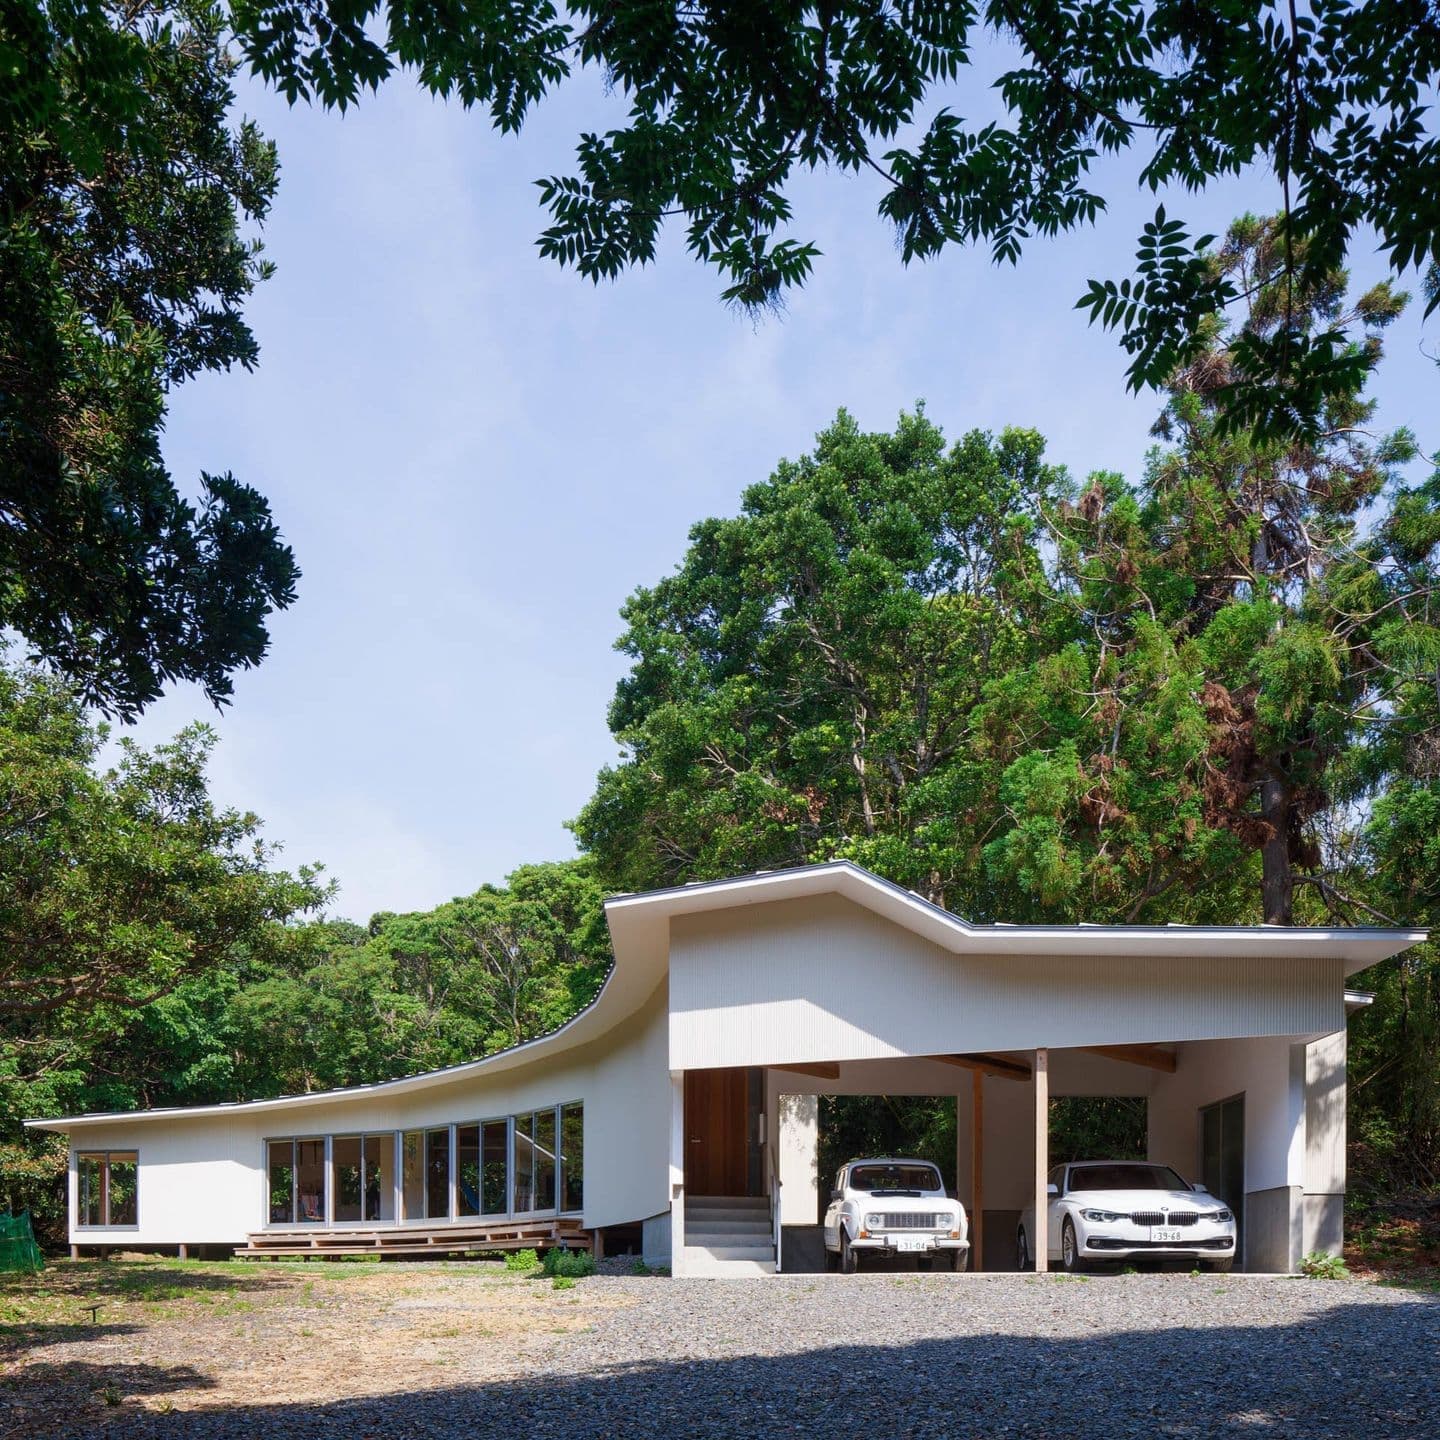 大阪の建築家・中平勝が設計した木々に囲まれた自然の中に建つ木造平屋住宅です